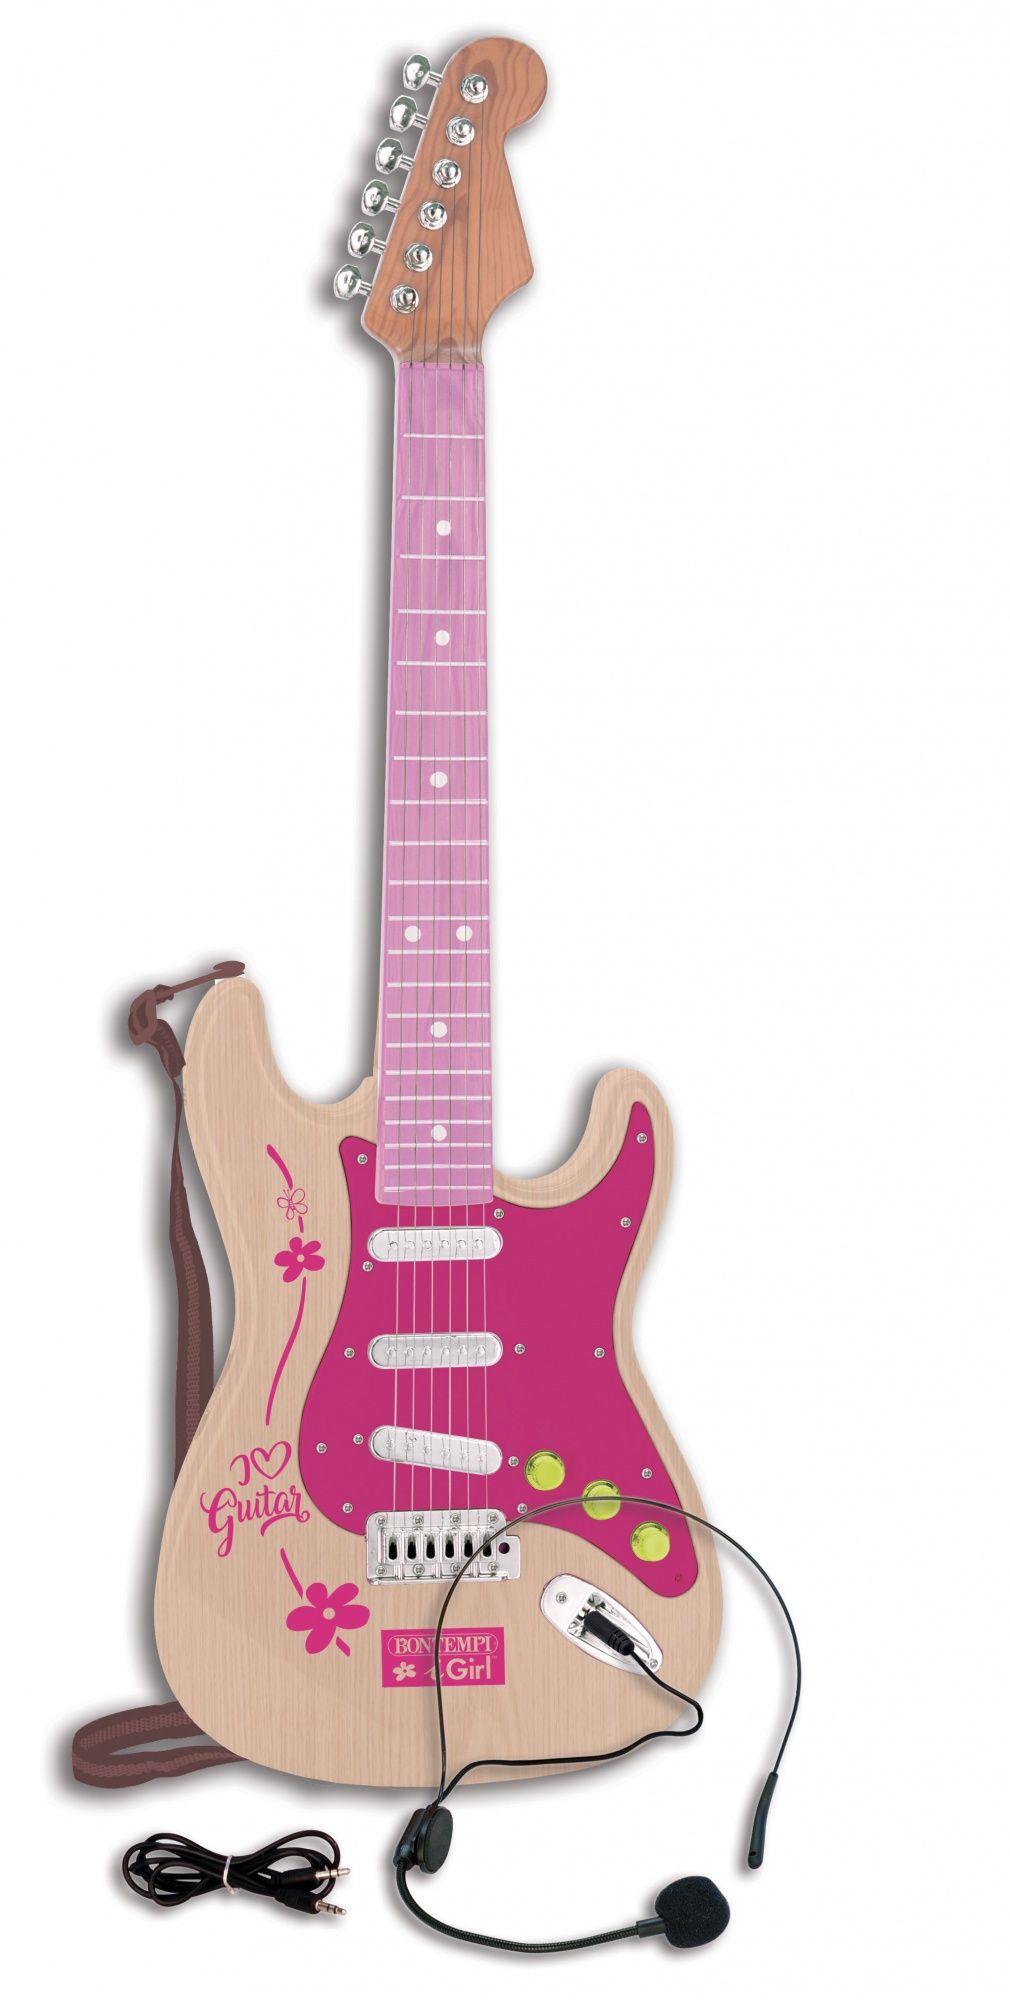 Bontempi 241371 Zabawka Elektryczna Gitara Różowa Dla Dziewczynki